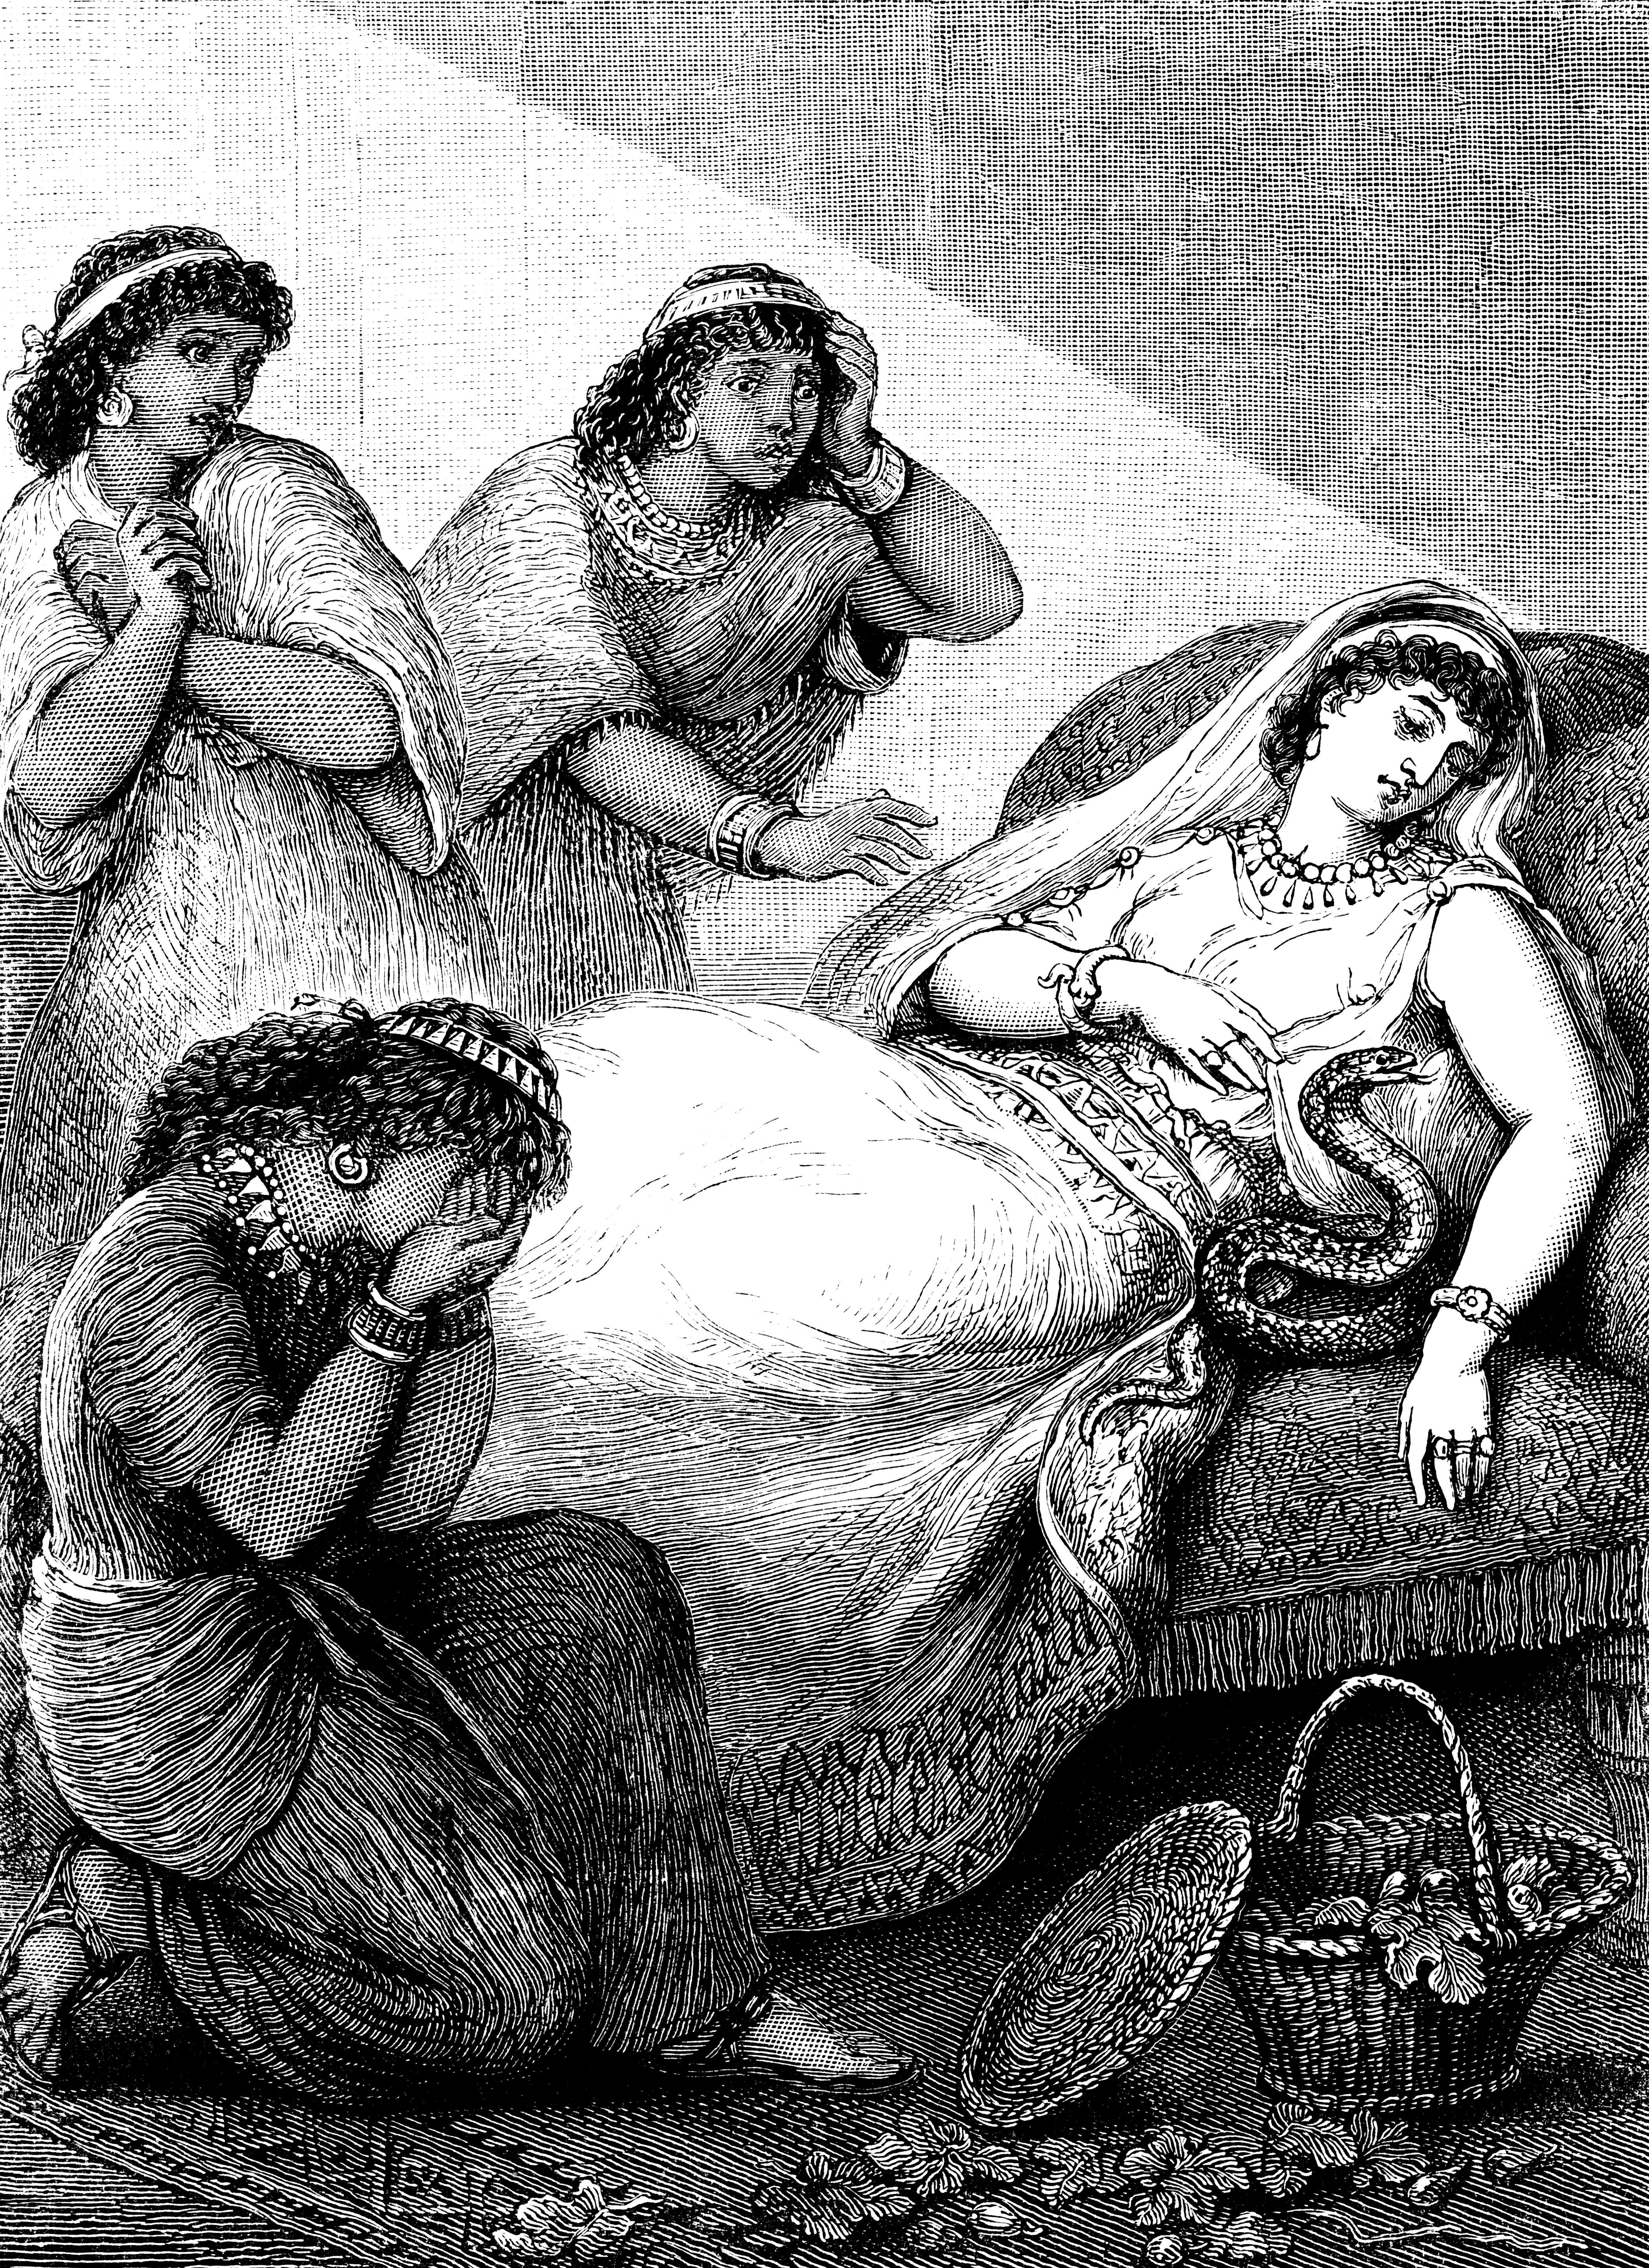 A rainhe egípcia Cleópatra retratada em seu leito de morte em arte de uma revista infantil inglesa do final do século 19 (Foto: Getty Images)